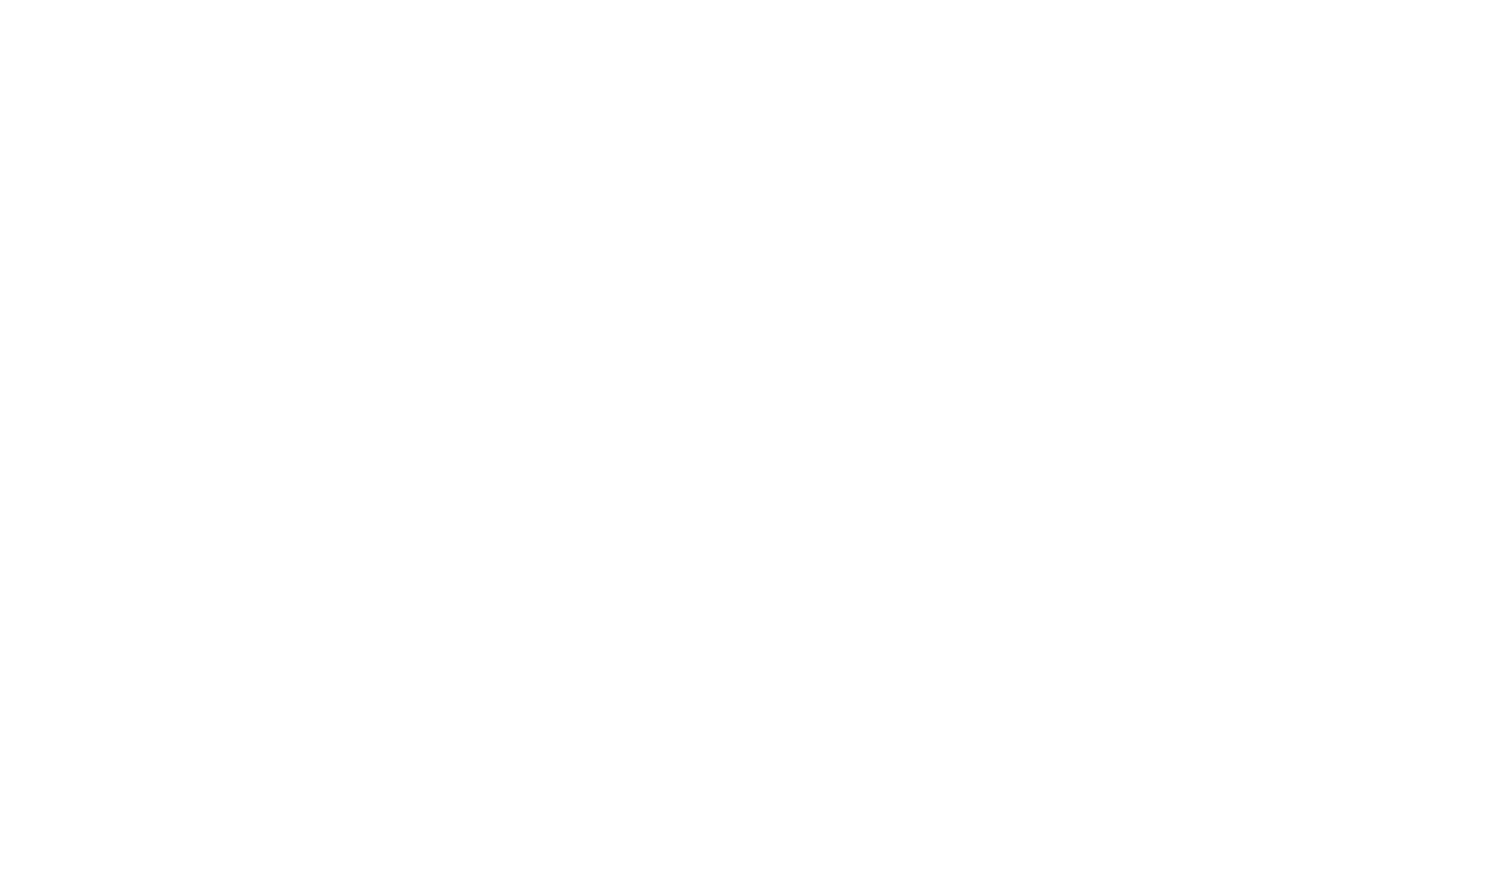 Big Night Media